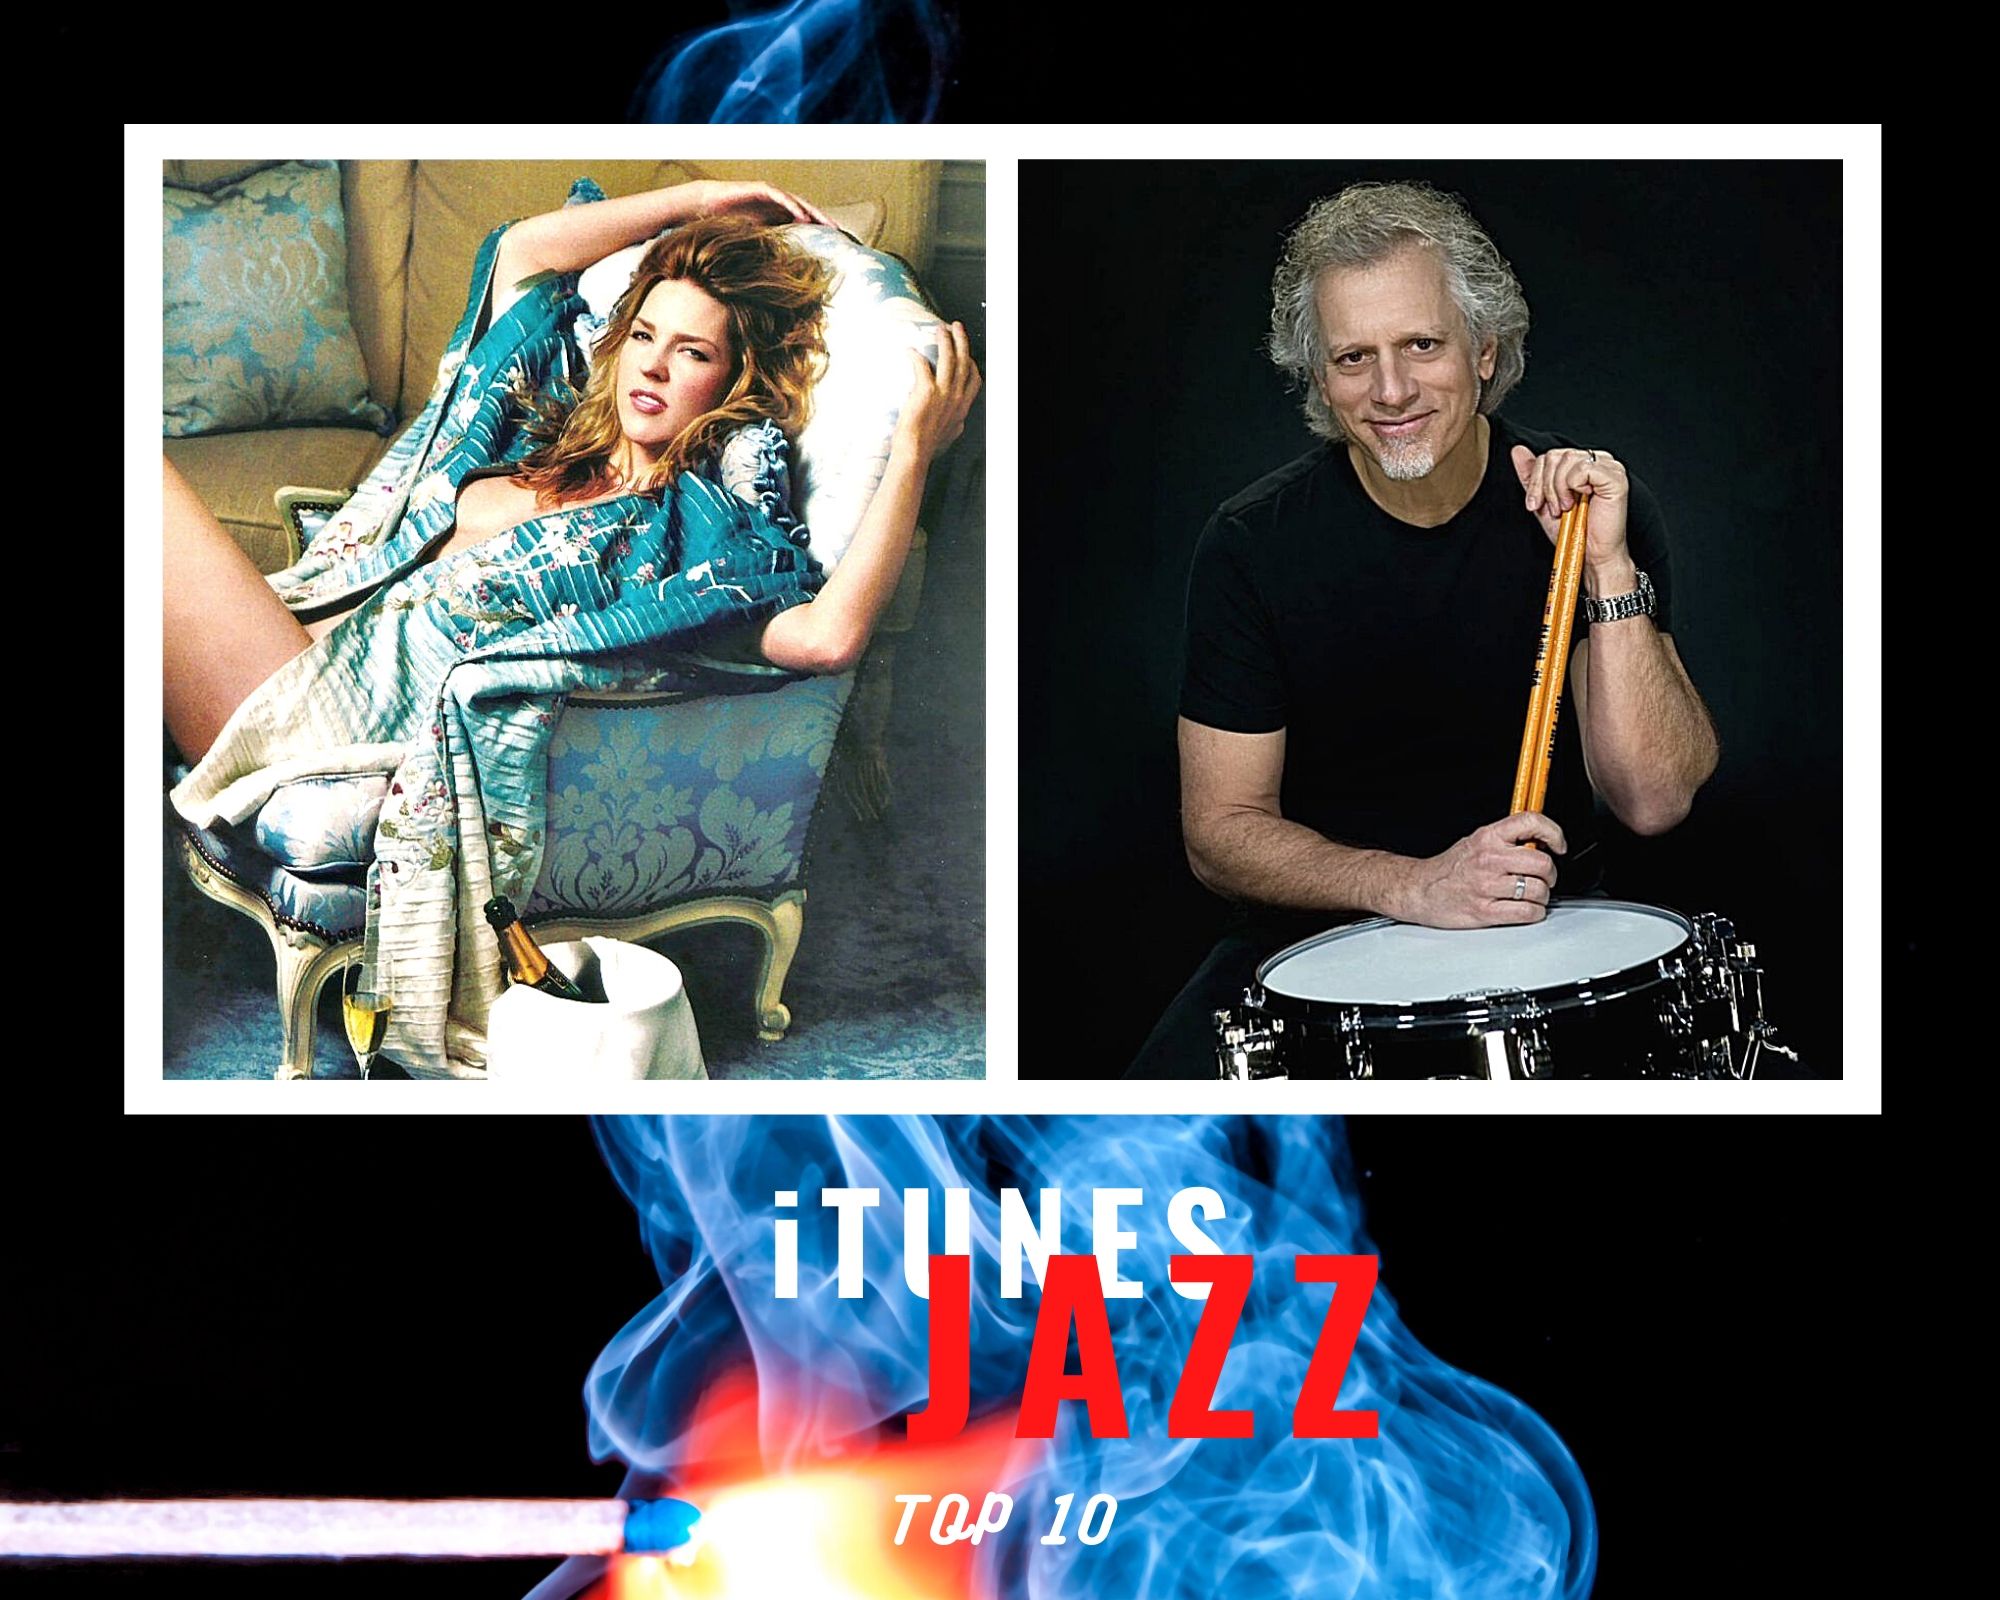 iTunes Italia, Top 10 Jazz: Diana Krall e Dave Weckl i nuovi classici del jazz